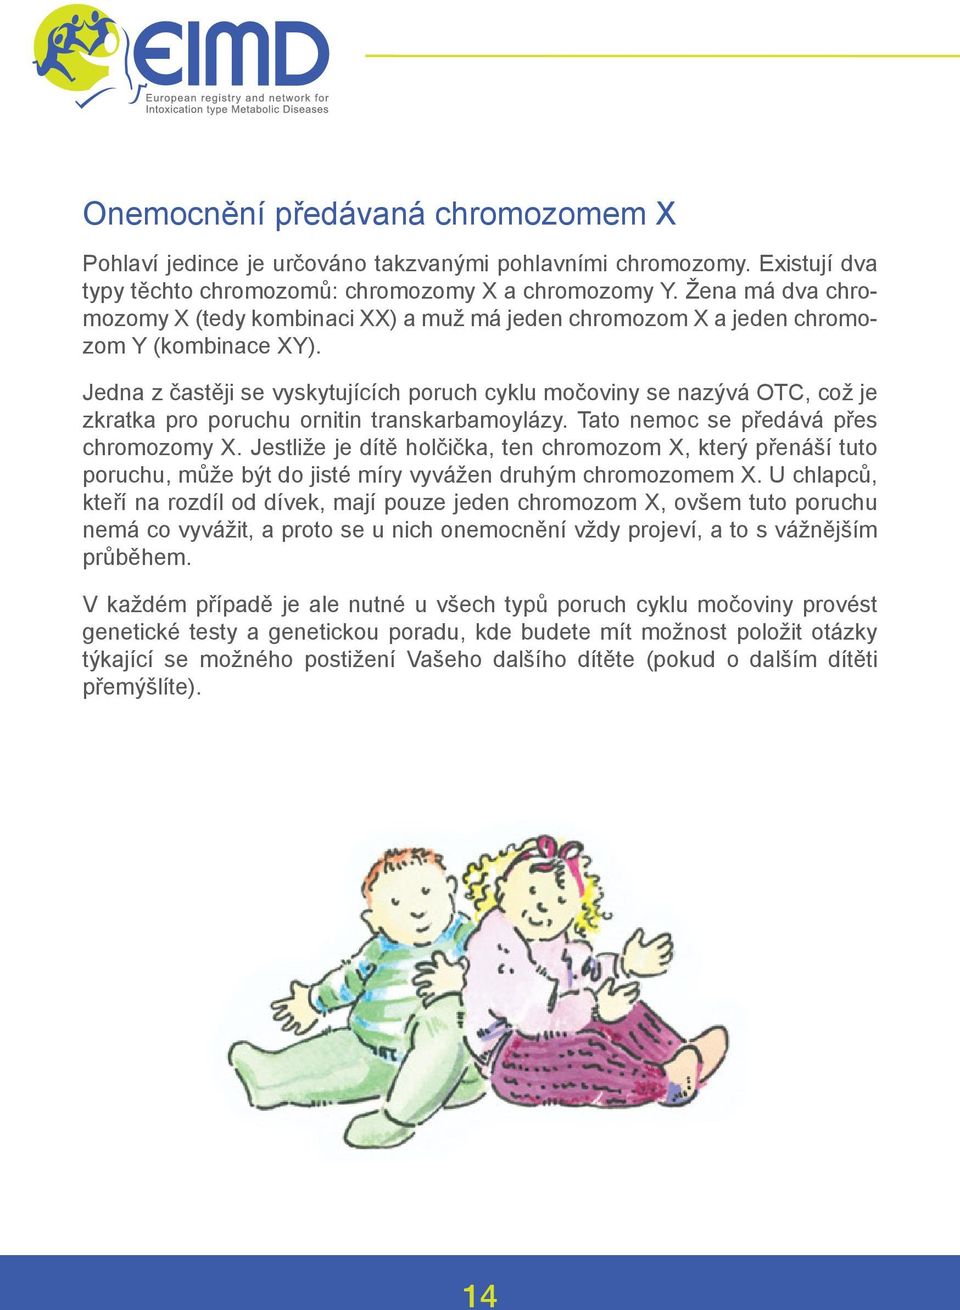 Jedna z častěji se vyskytujících poruch cyklu močoviny se nazývá OTC, což je zkratka pro poruchu ornitin transkarbamoylázy. Tato nemoc se předává přes chromozomy X.